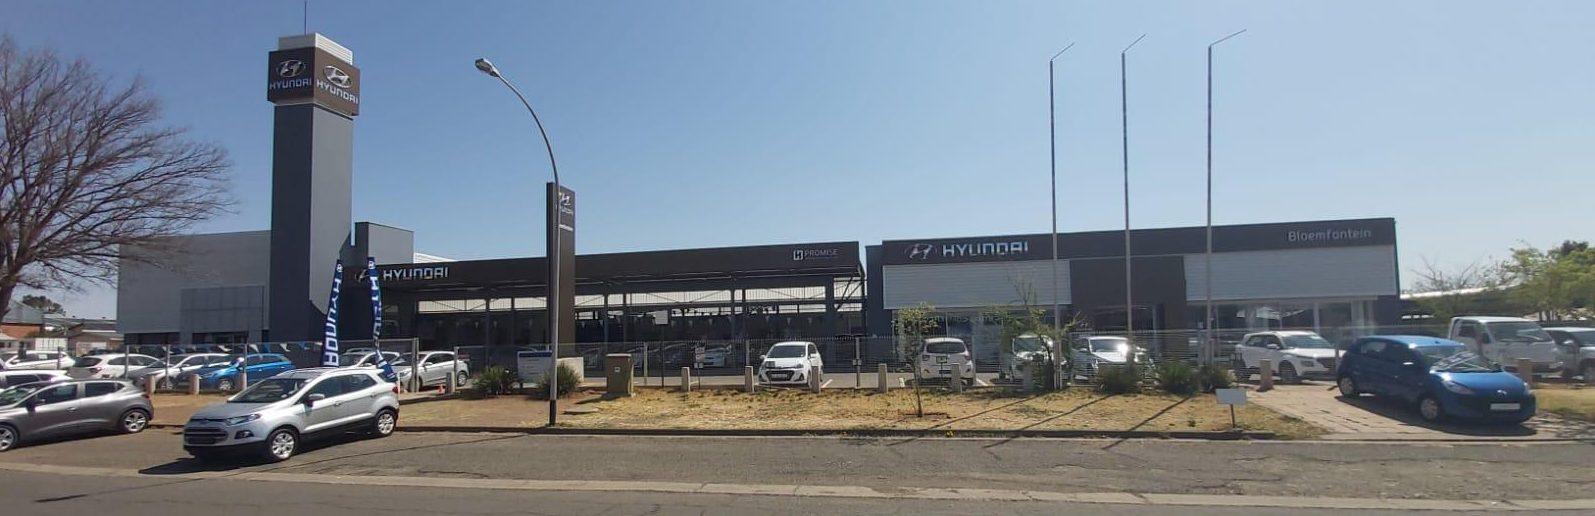 Hyundai Bloemfontein